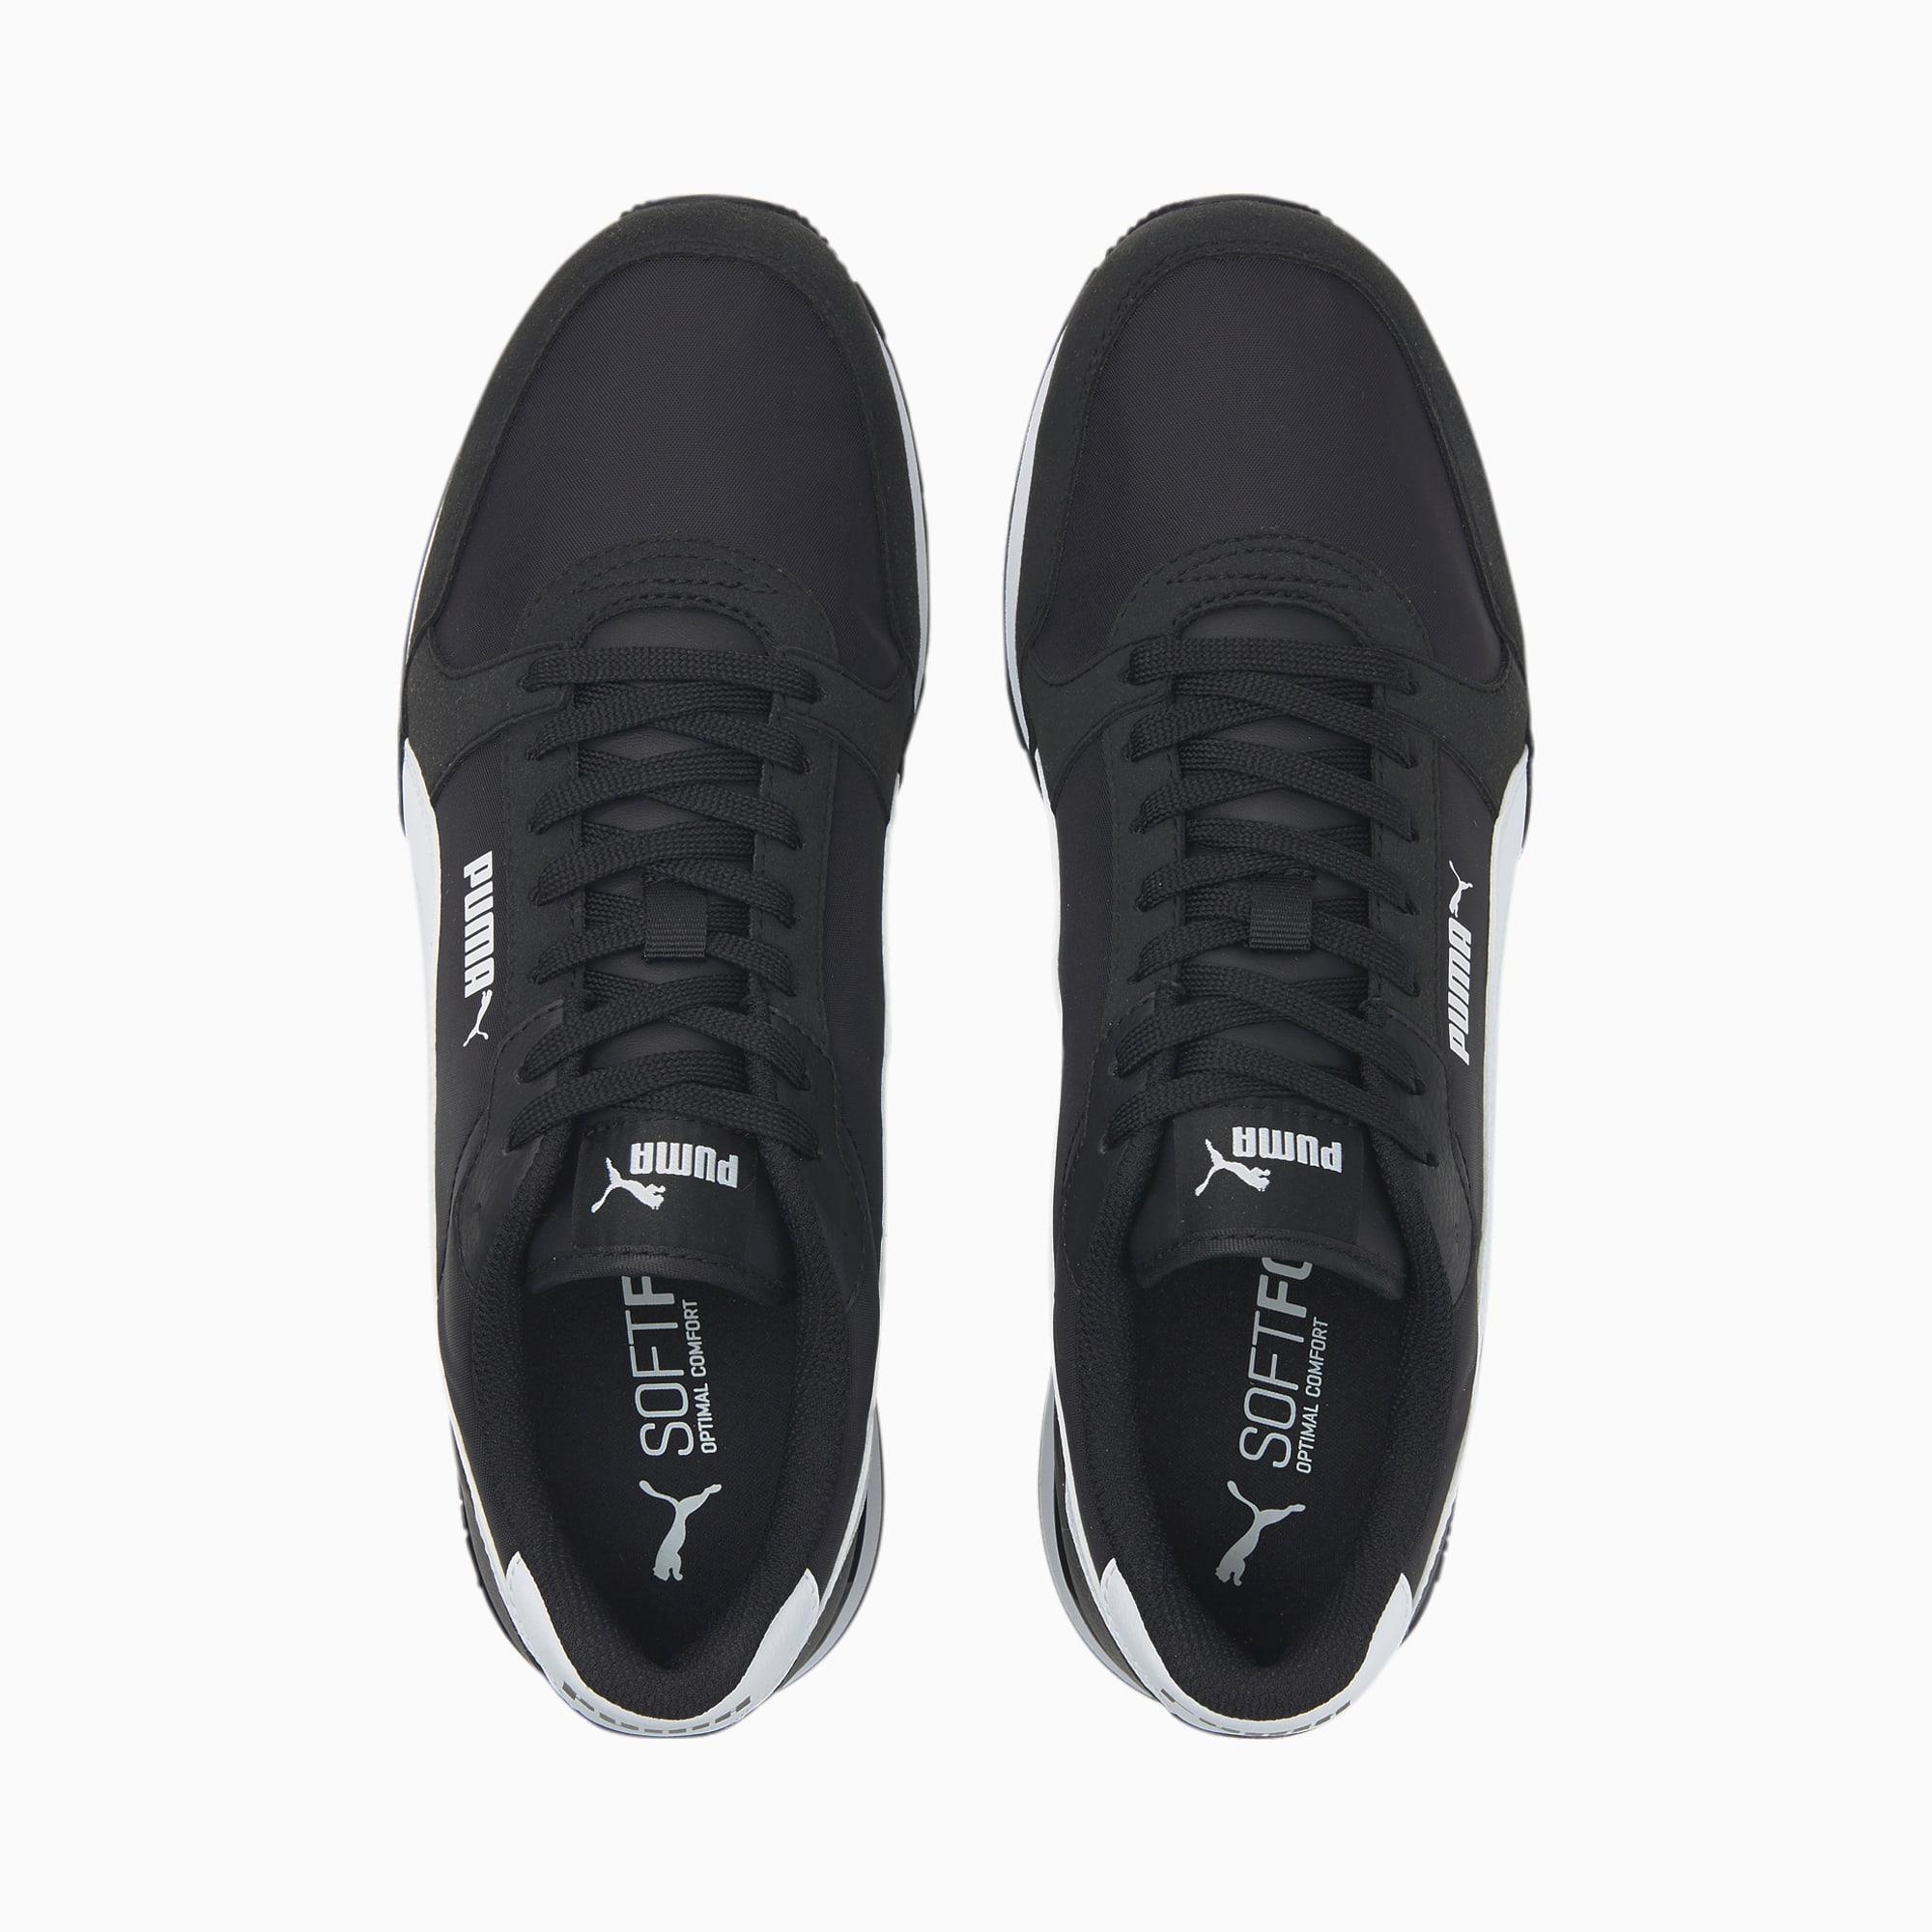 ST Runner v3 | PUMA Sneakers Men\'s